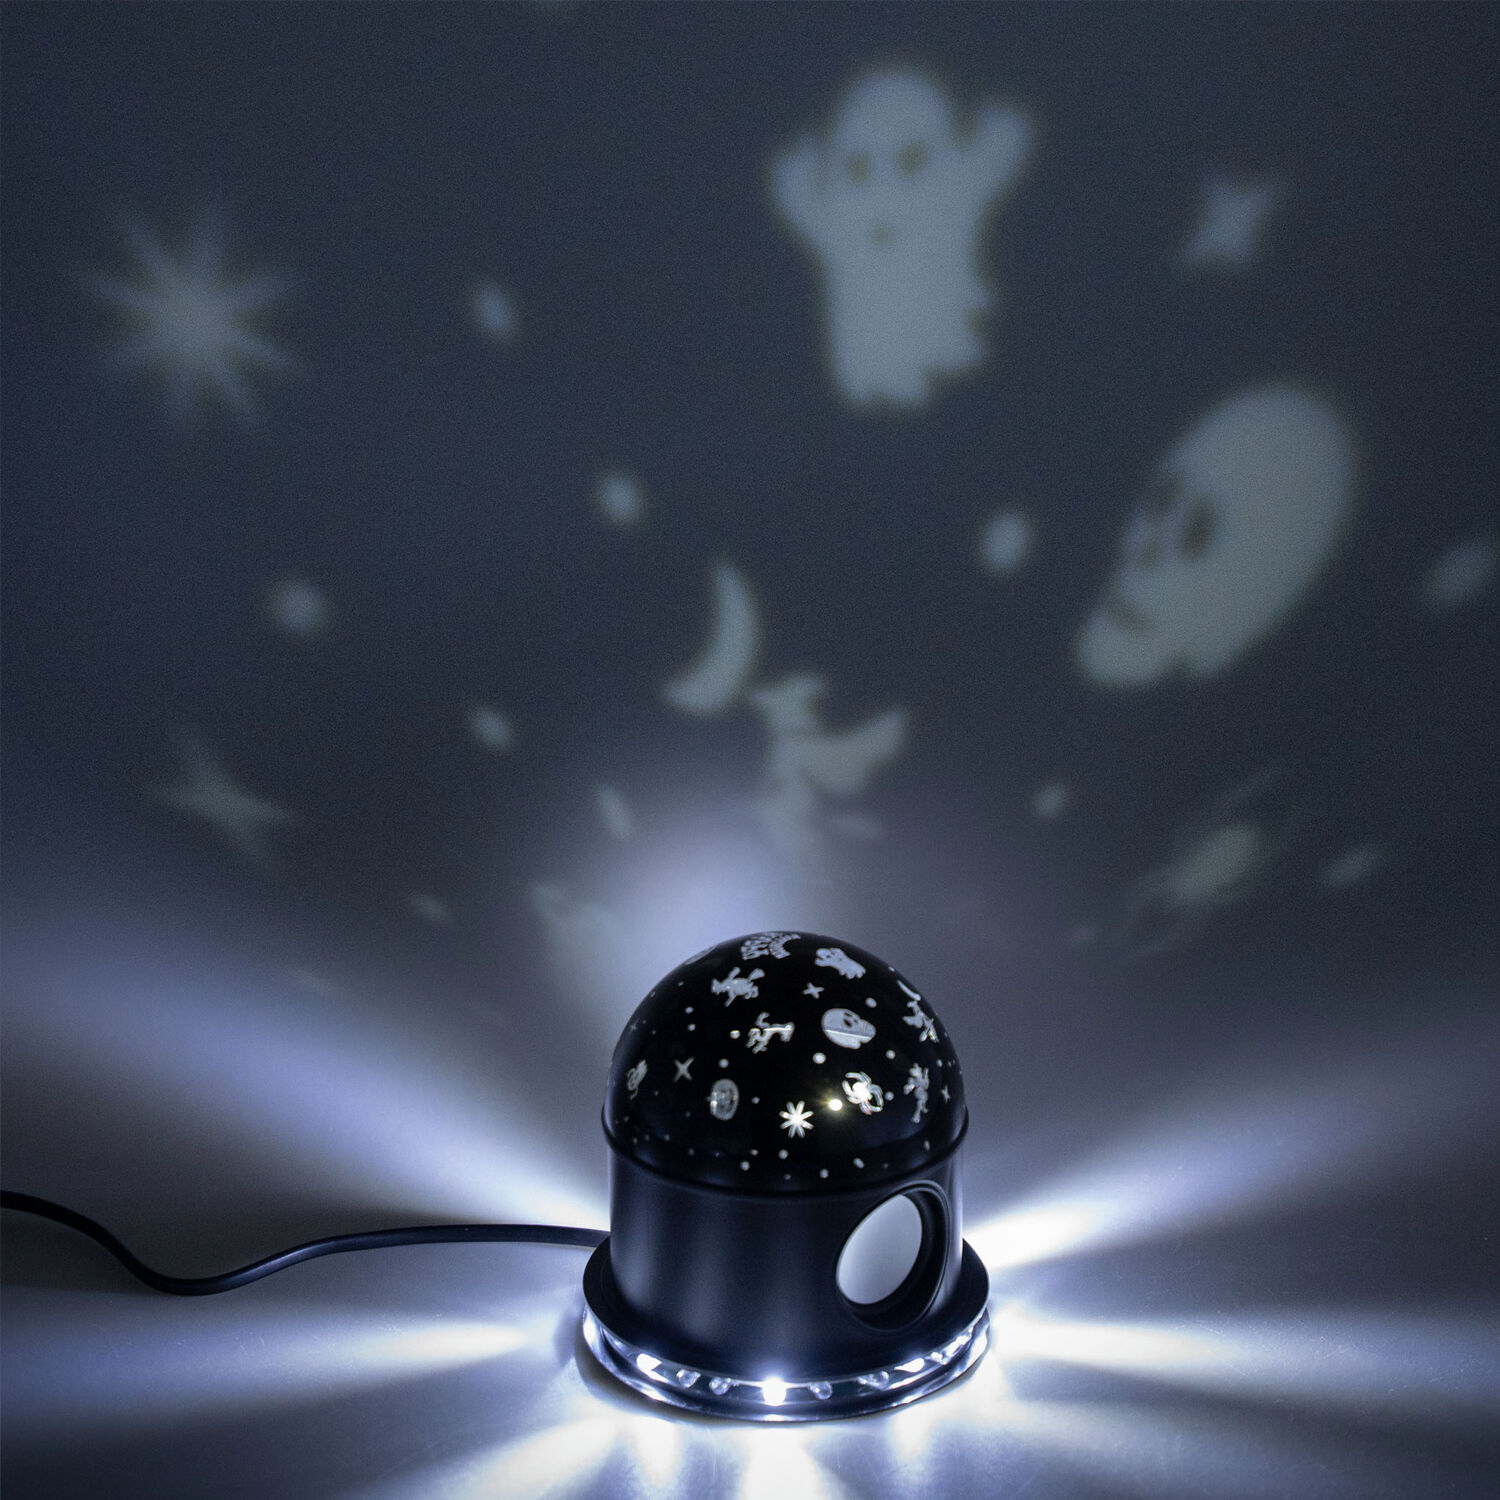 NEU Halloween-Licht-Projektor Diskokugel mit Grusel-Motiven, 12x12x14cm -  Halloween Party-Dekoration Halloween Produkte 